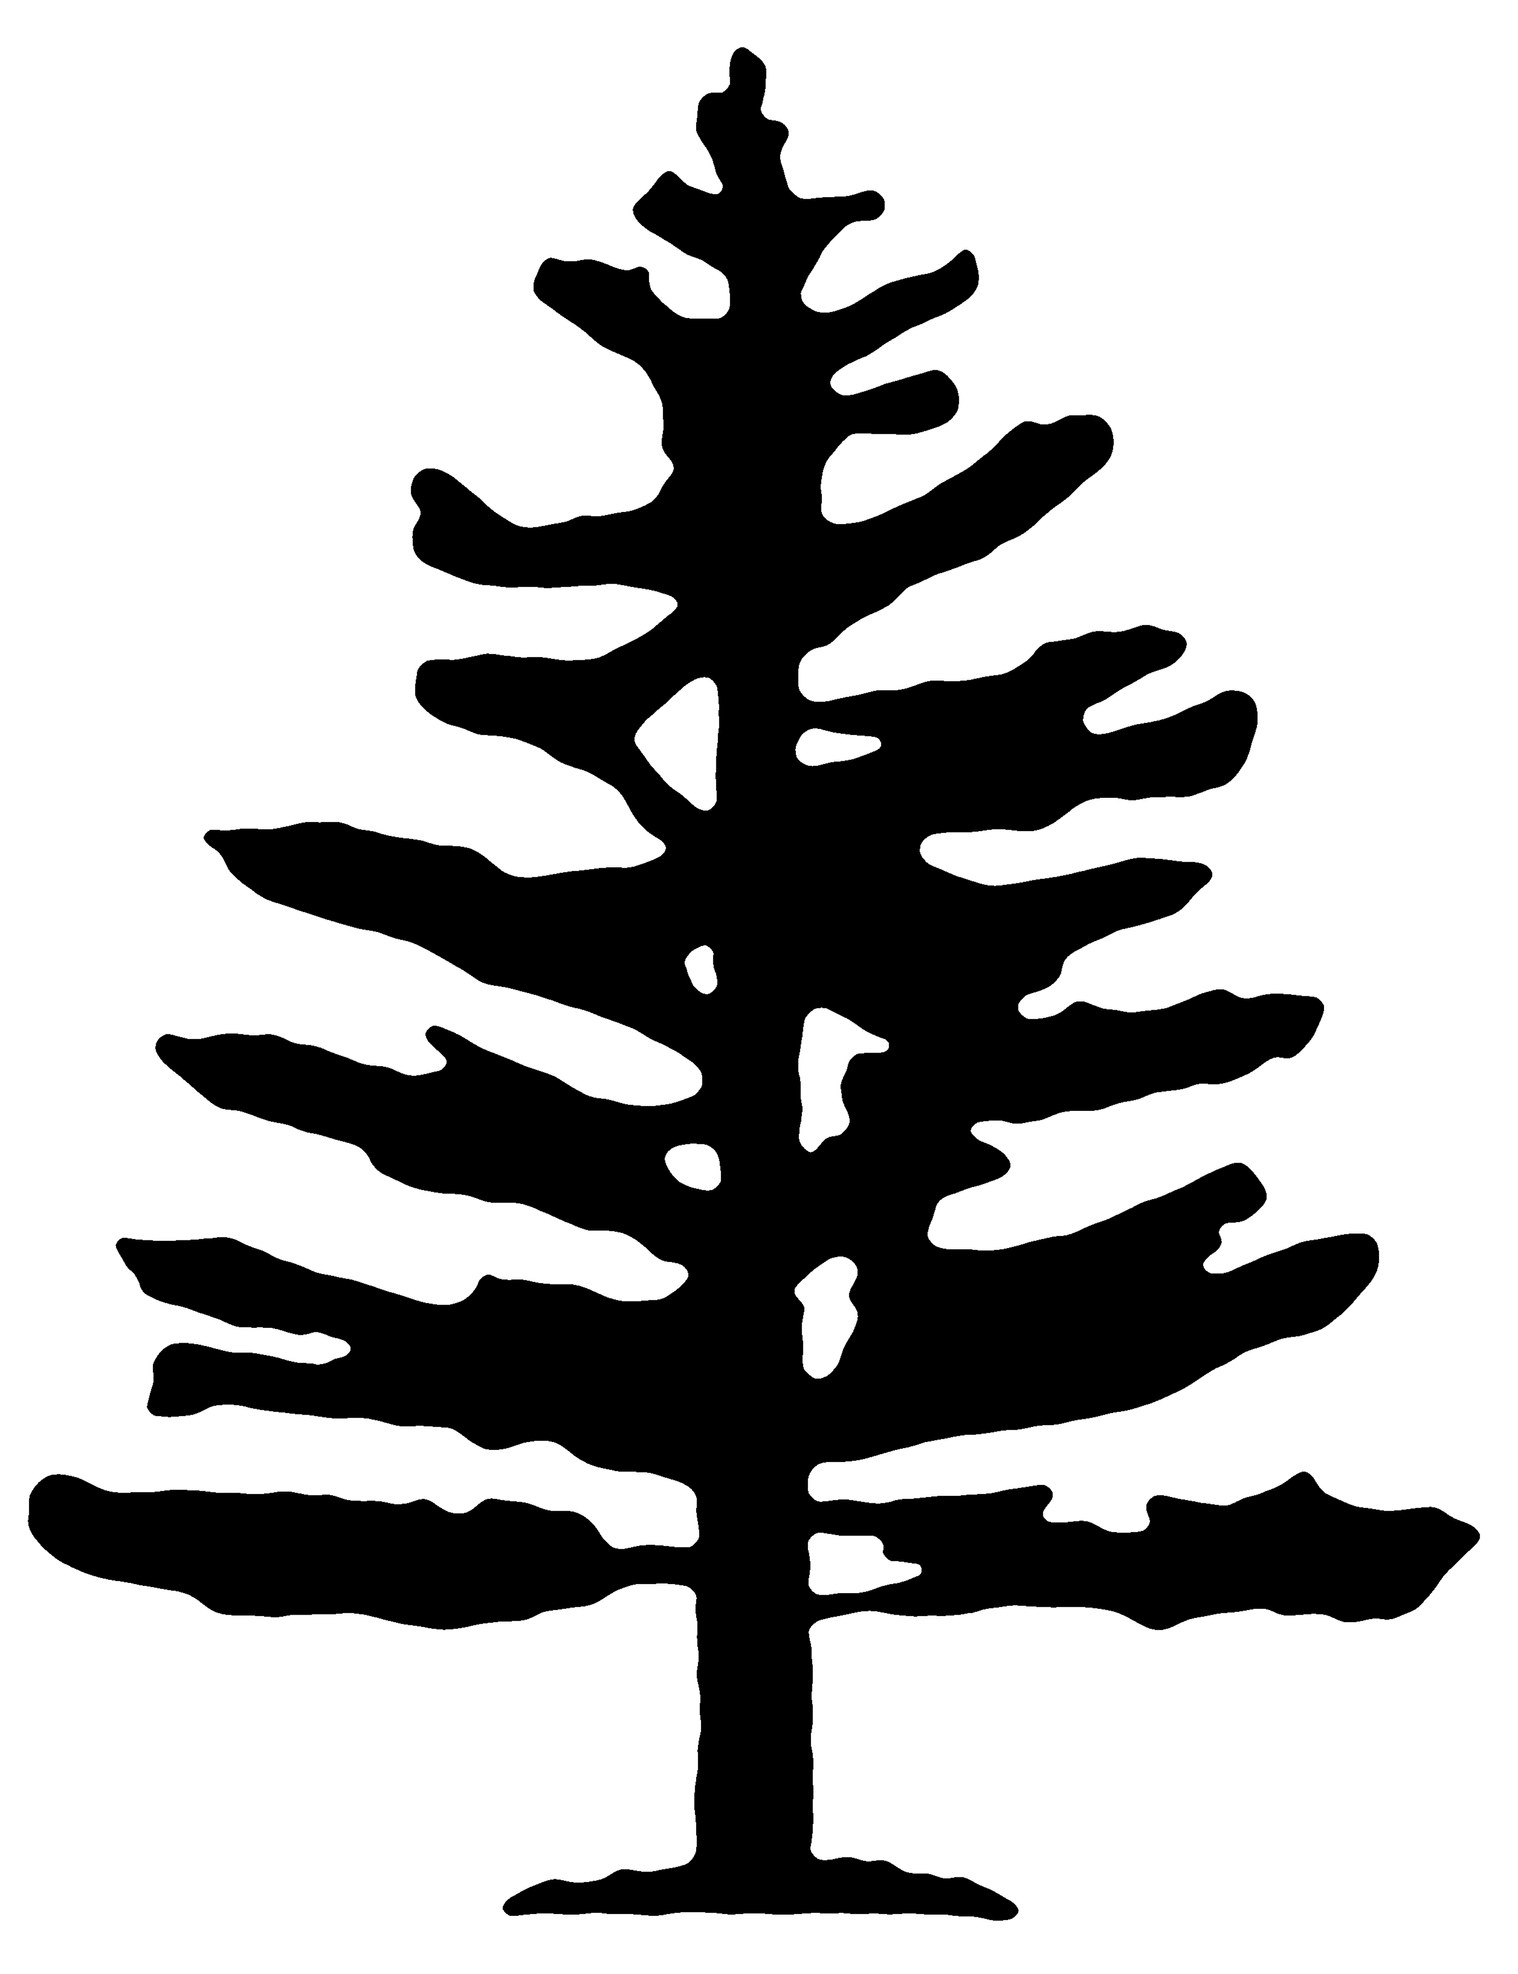 A tree silhouette design